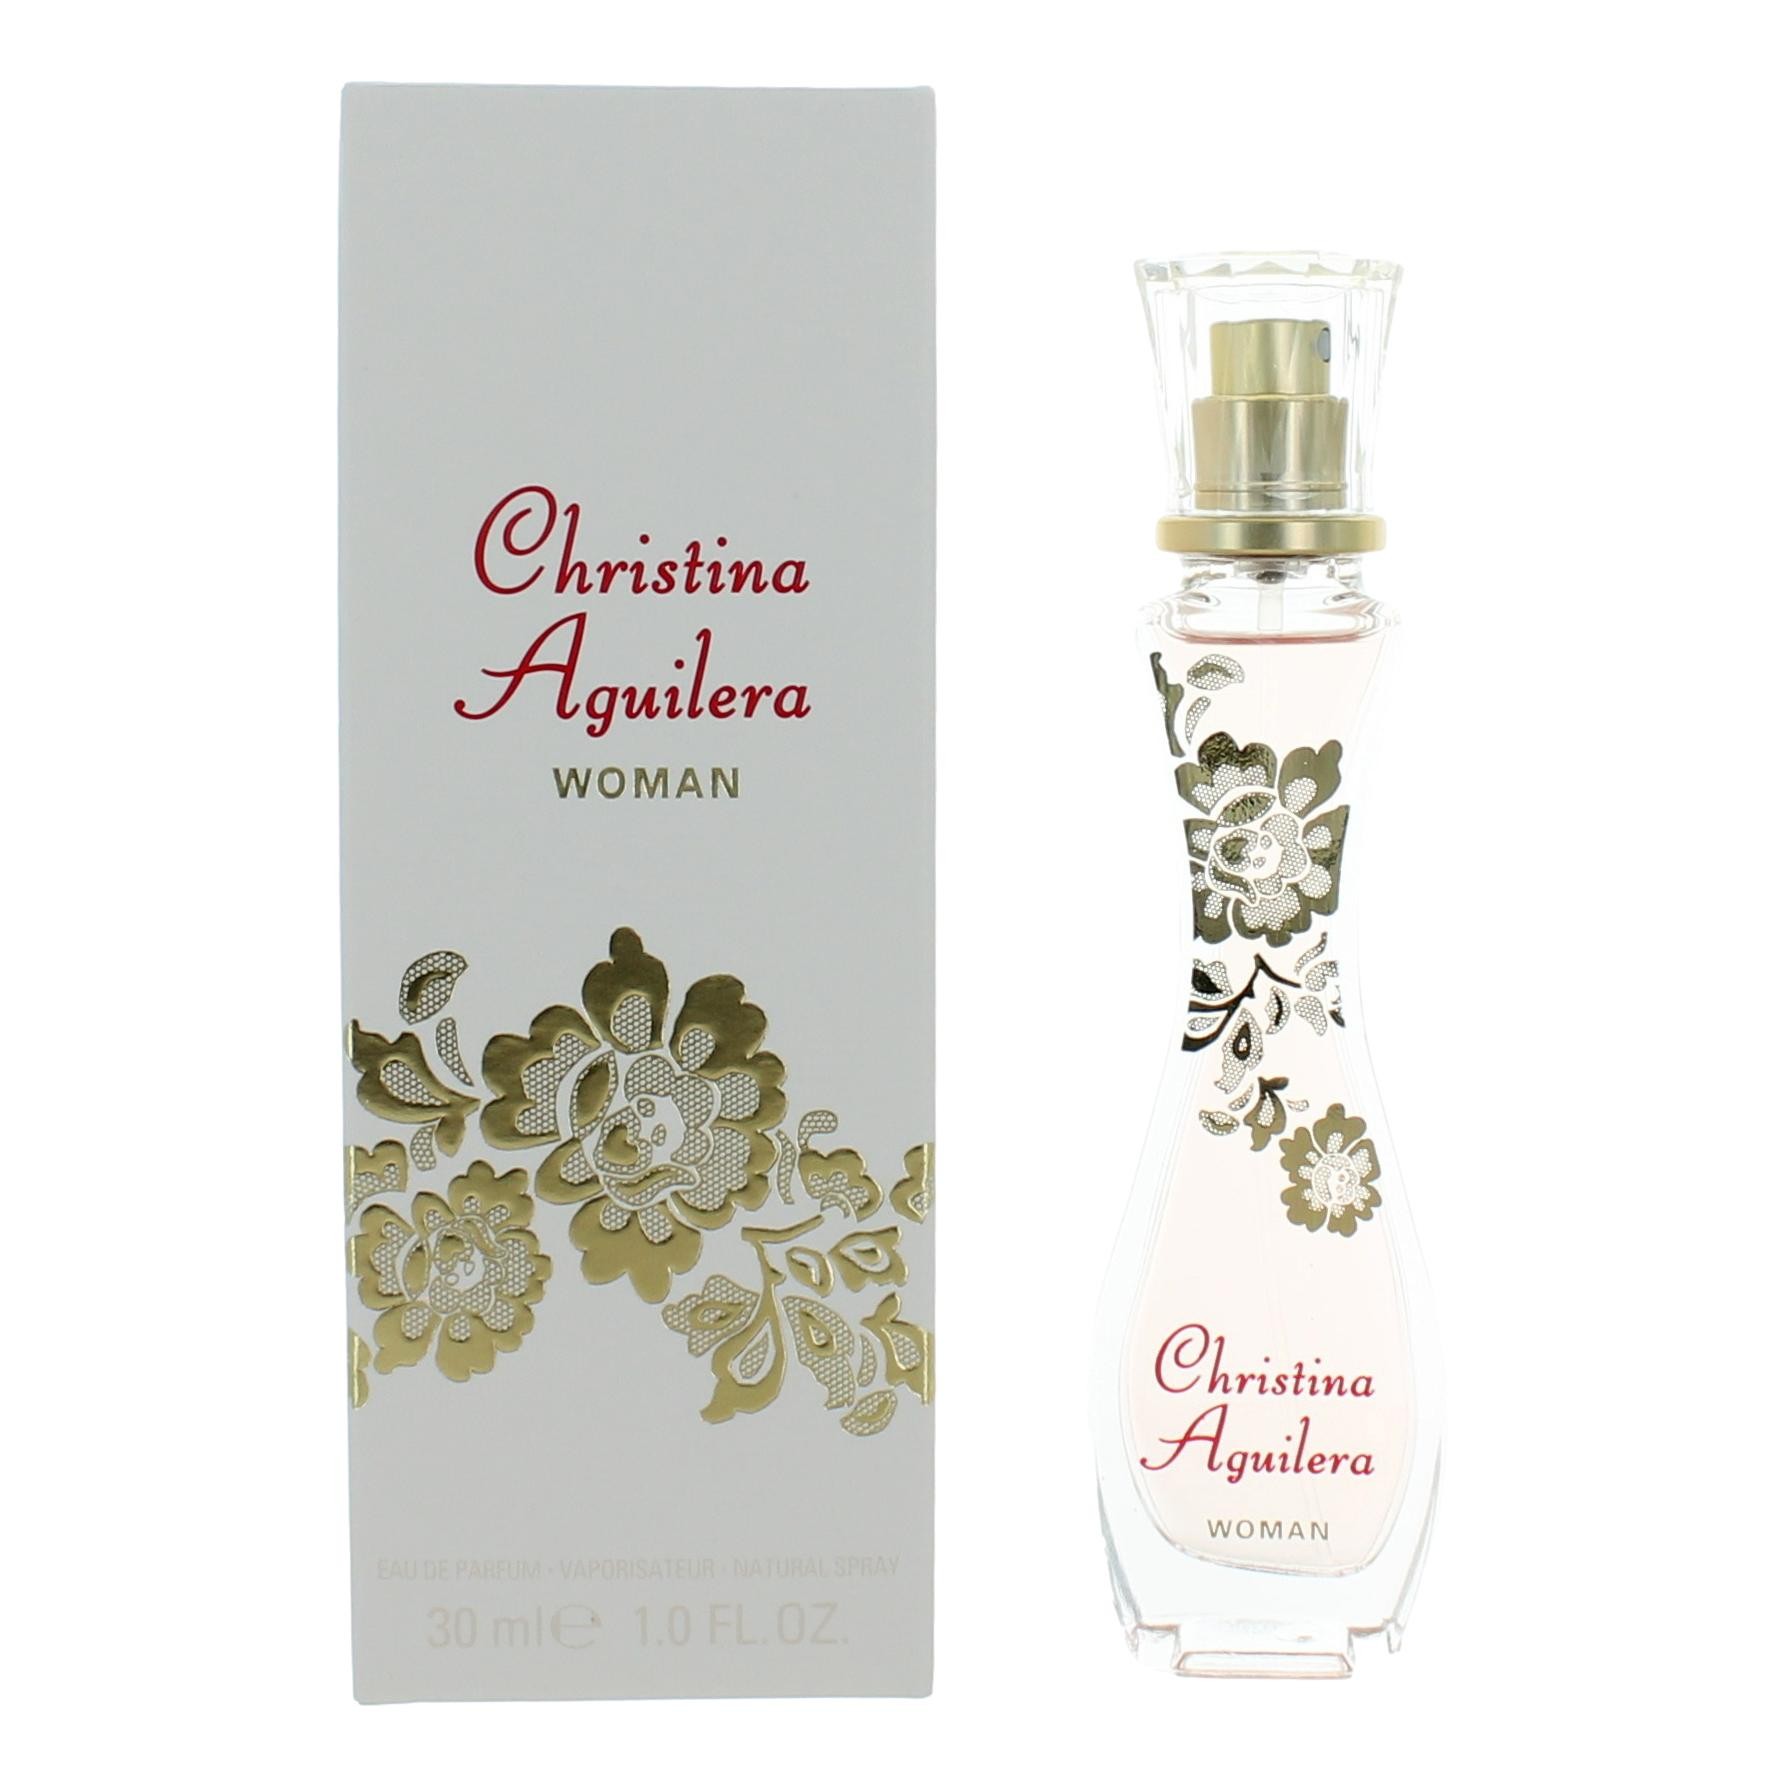 Christina Aguilera 280663 Woman Eau De Parfum Spray for Women - 1 oz - image 1 of 3